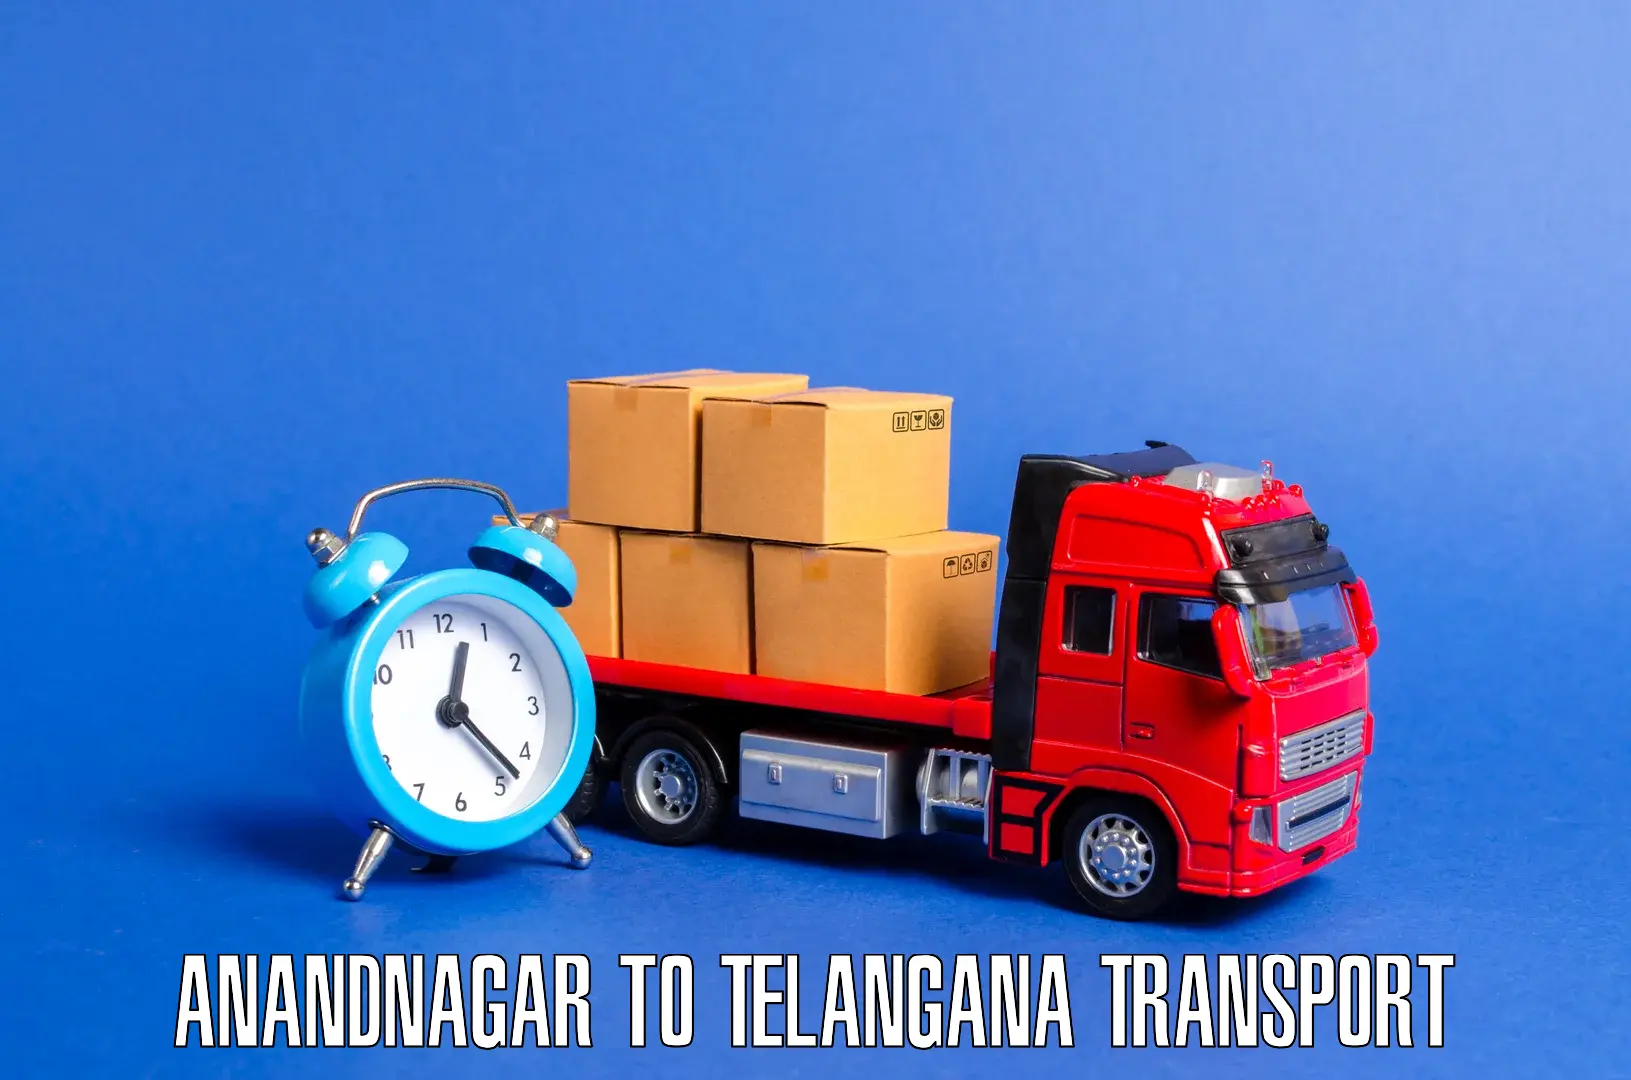 Transport in sharing Anandnagar to Vemulawada